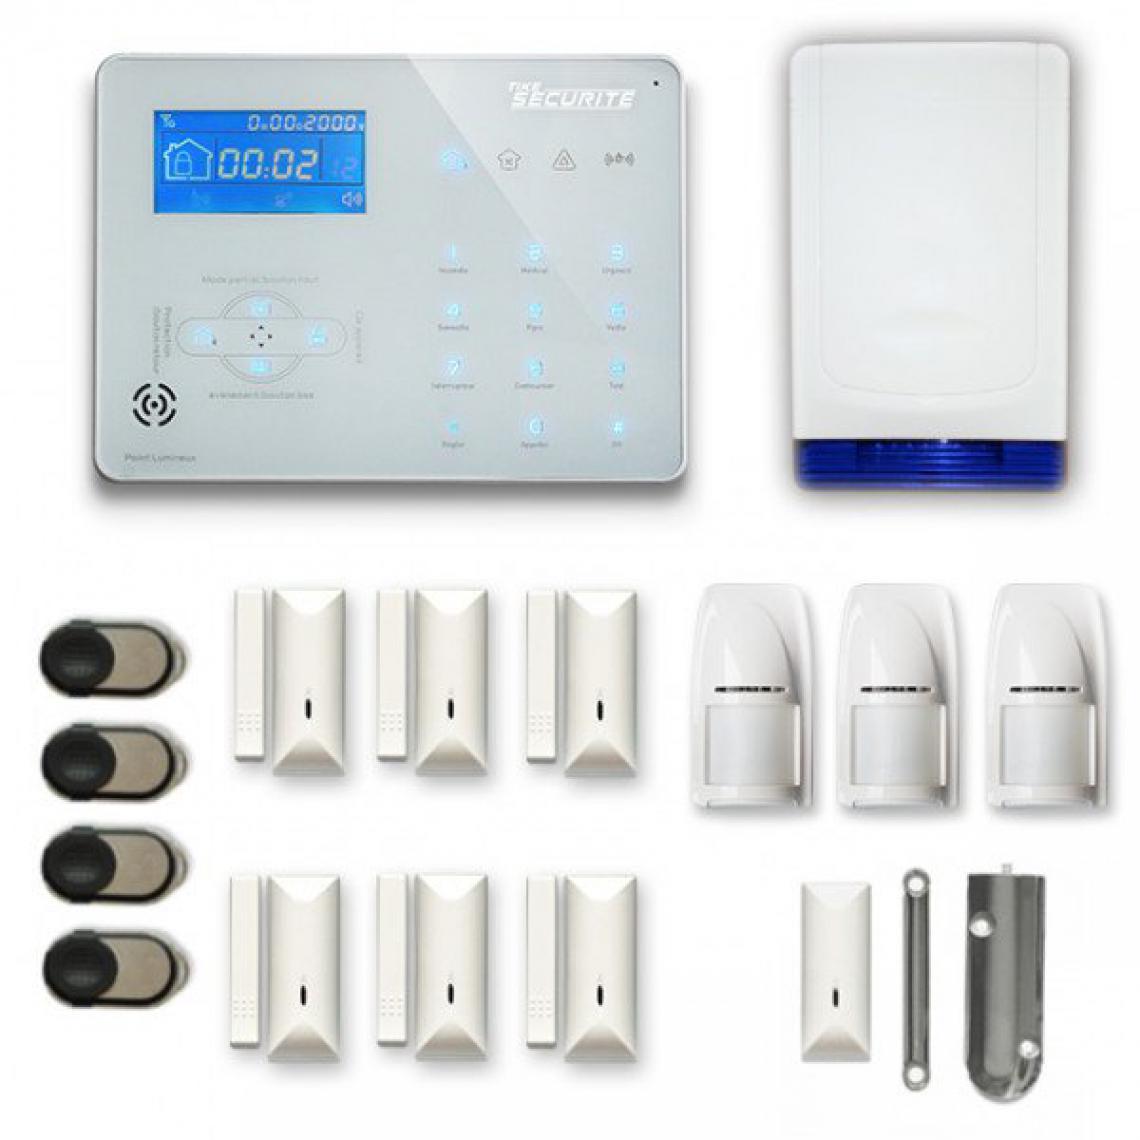 Tike Securite - Alarme maison sans fil ICE-B57 Compatible Box internet et GSM - Alarme connectée